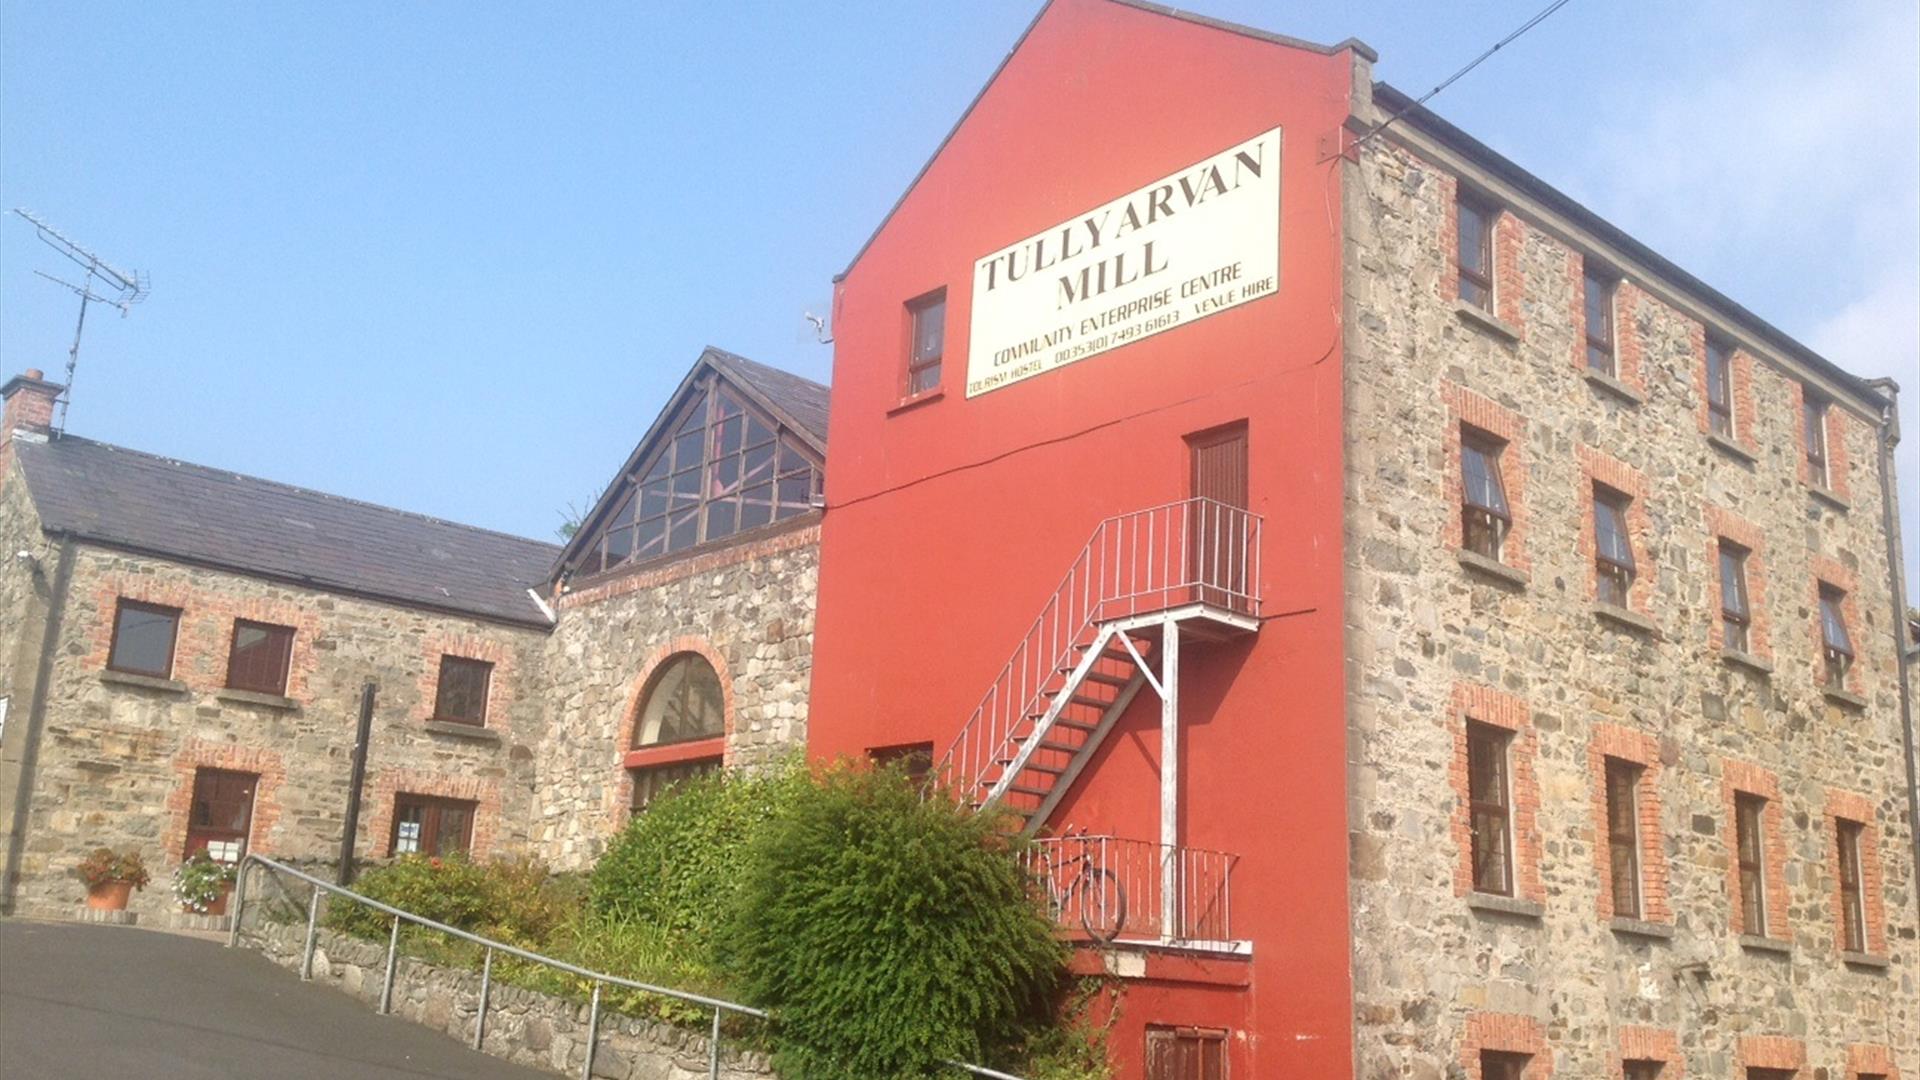 Tullyarvan Mill Hostel, Buncrana, Co.Donegal